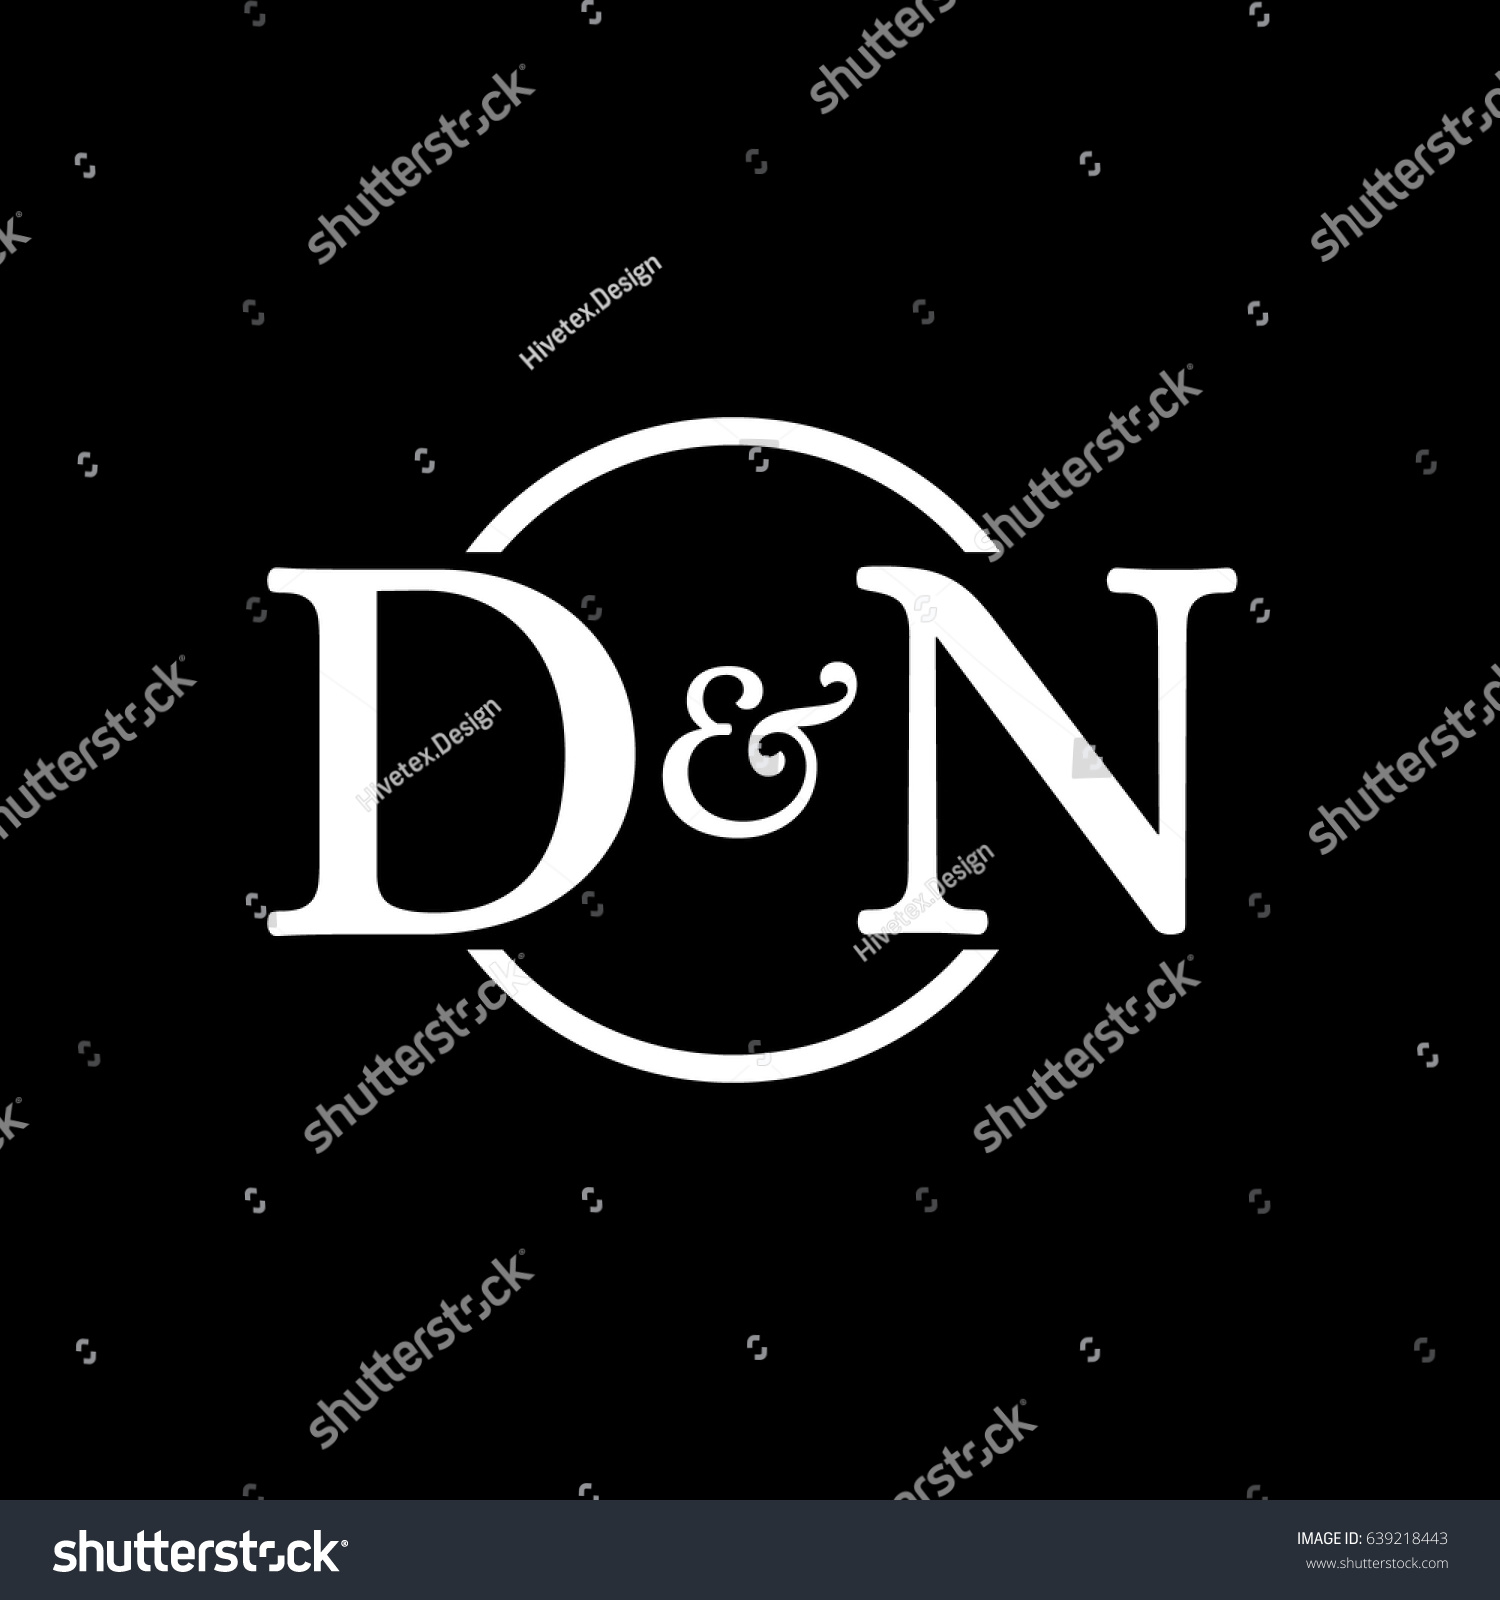 Dn Logo Stock Vector Royalty Free